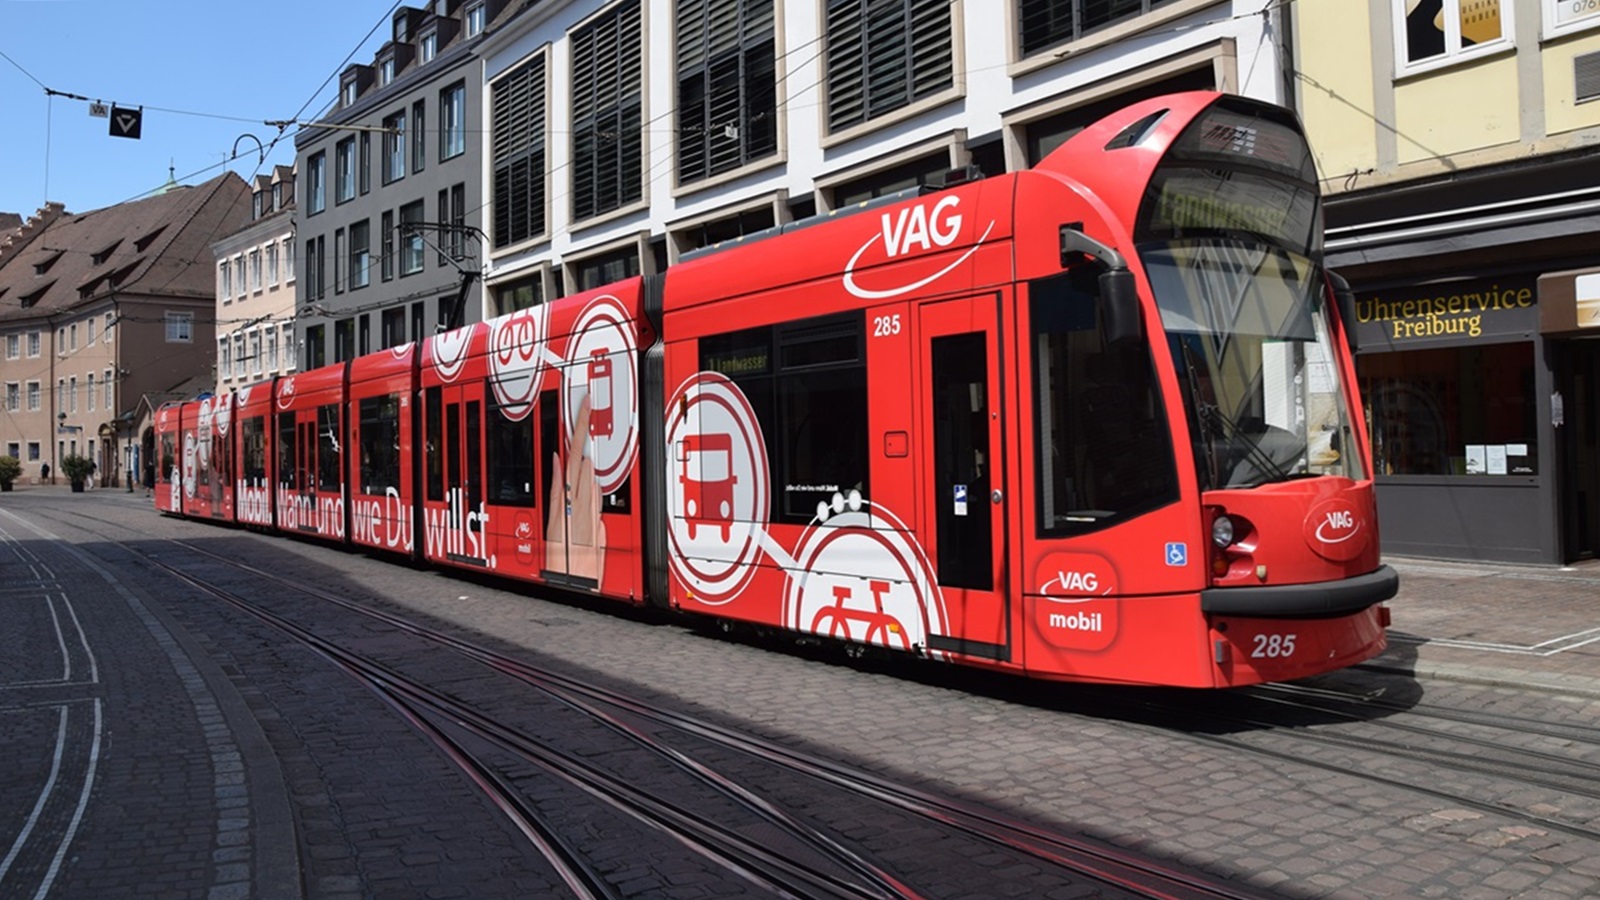 Neue Werbung für VAG Mobil App ist Nr. 285 Siemens in Freiburg im Breisgau entstanden.